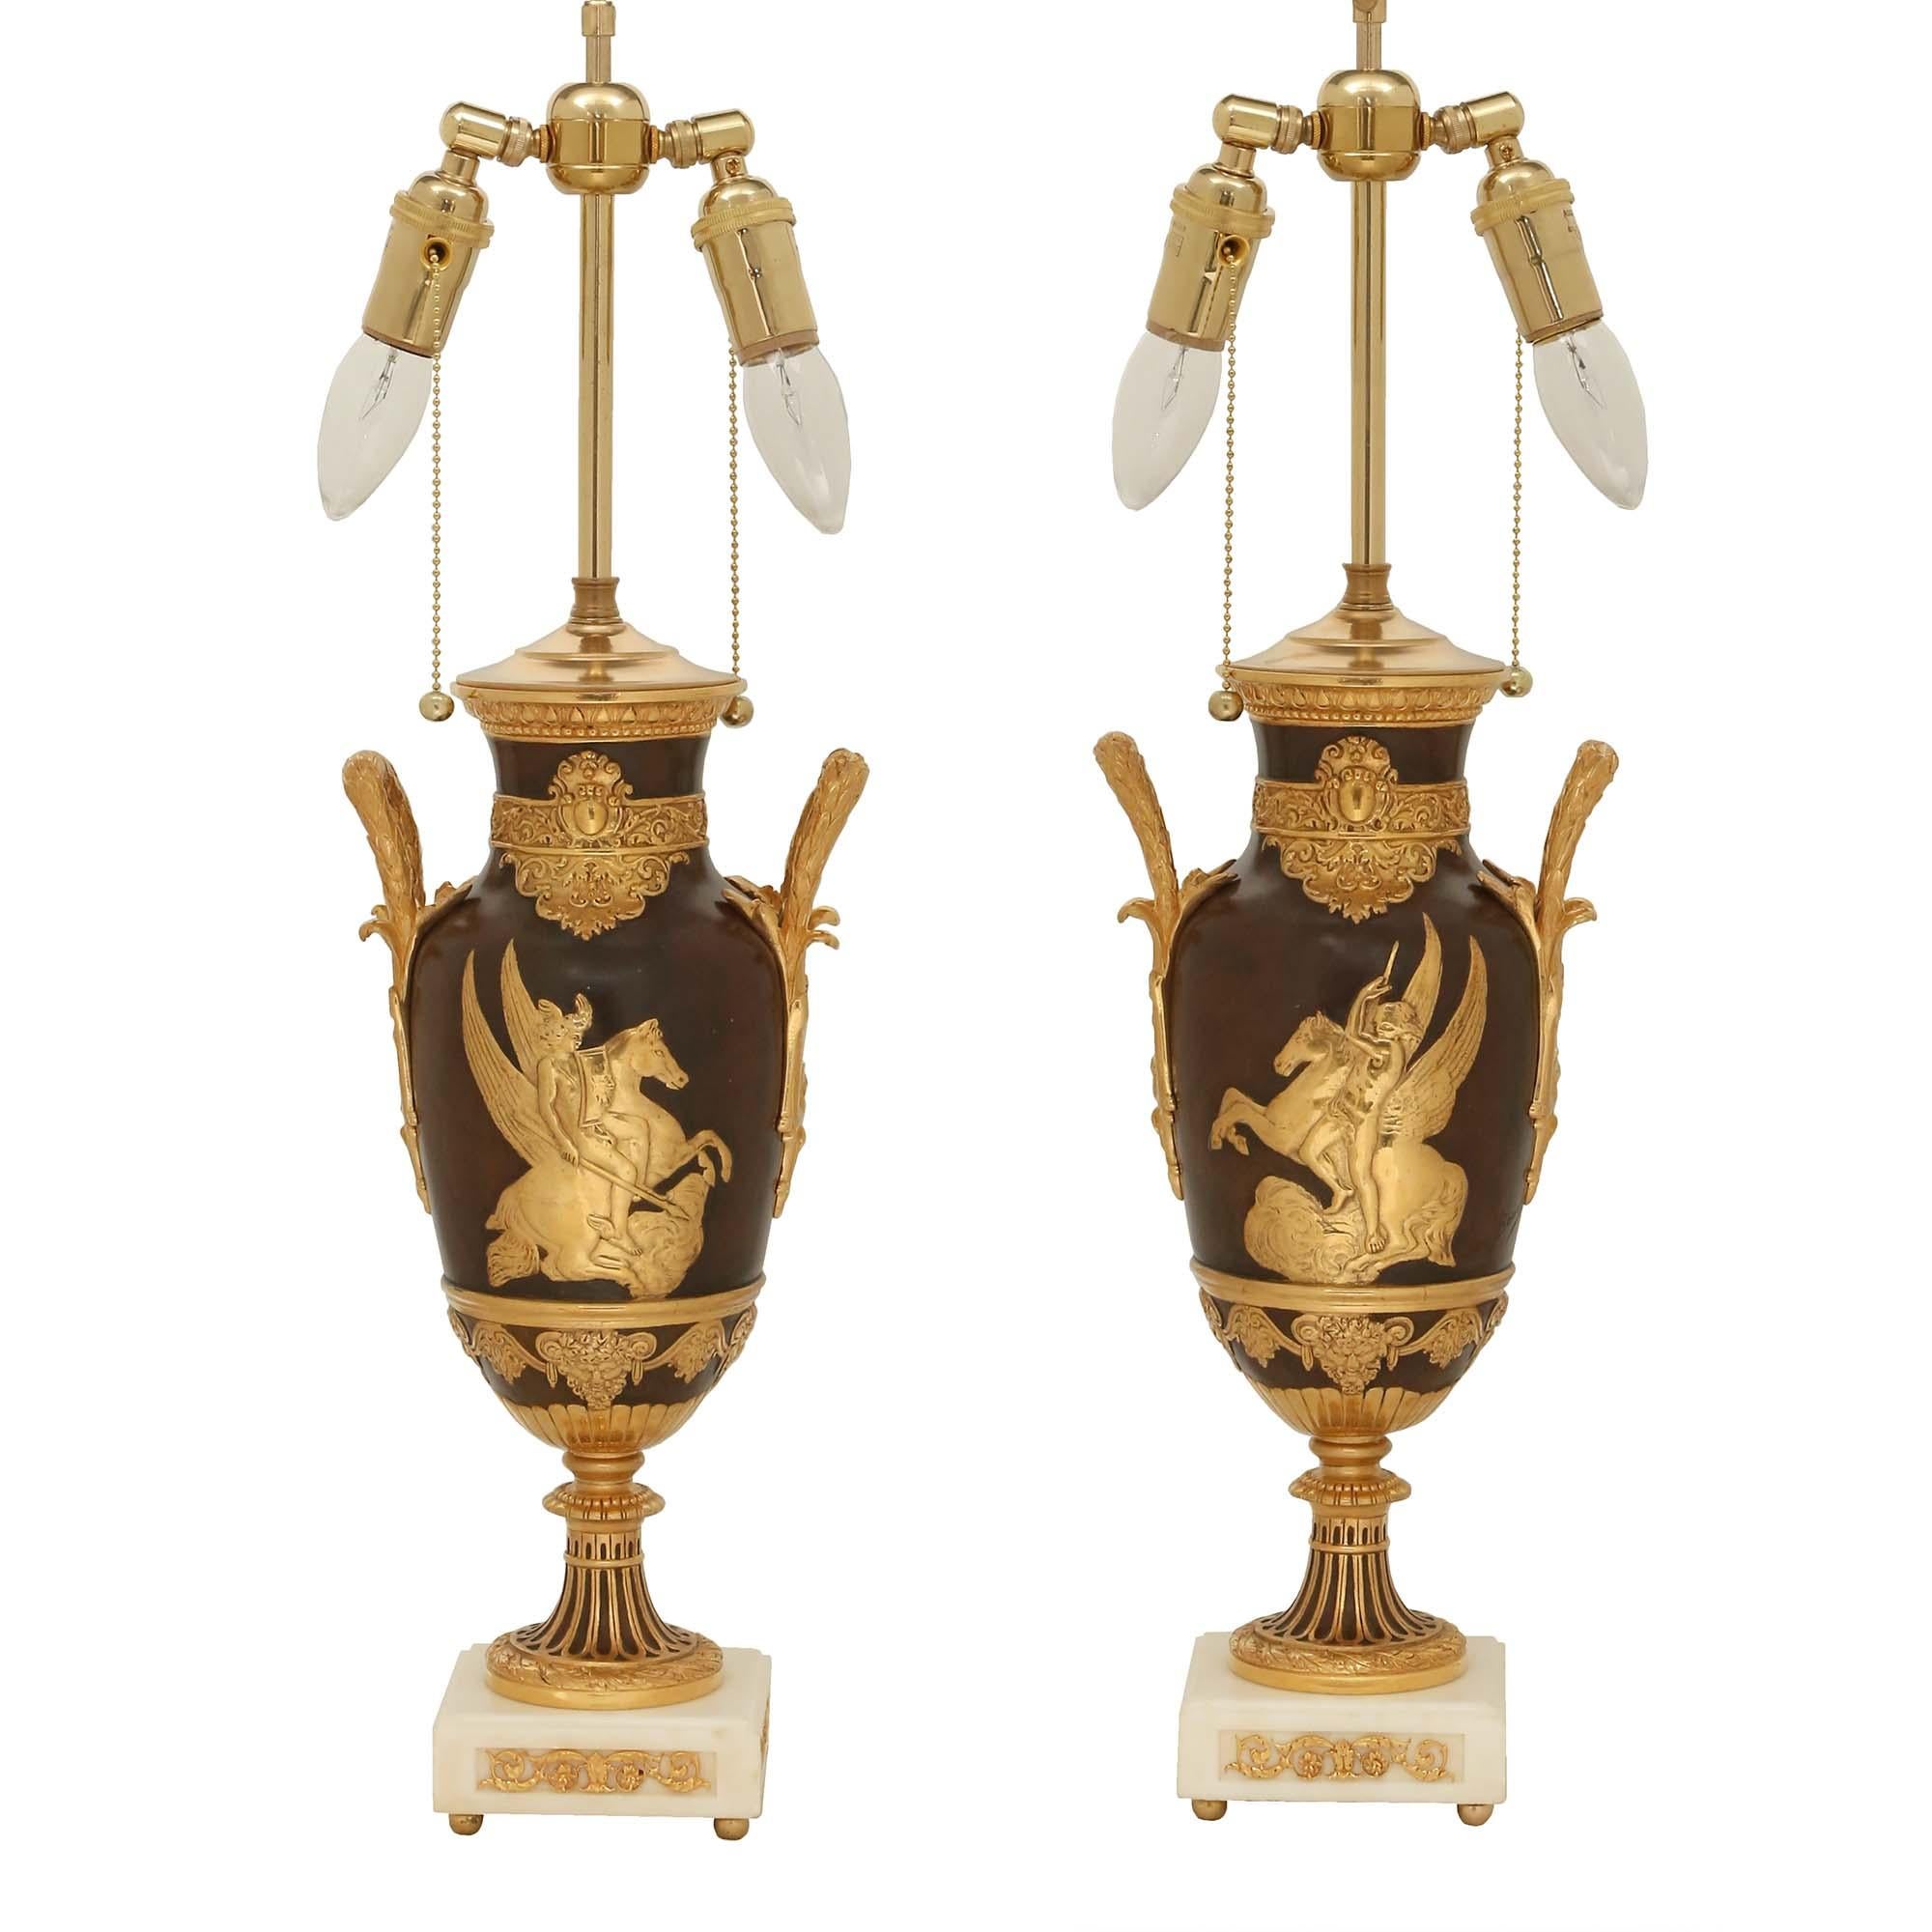 Ein atemberaubendes Paar französischer Urnen im neoklassischen Stil des 19. Jahrhunderts aus patinierter Bronze, Ormolu und Marmor, in Lampen montiert, signiert LÉON BOUCHER. Jede Leuchte steht auf einem quadratischen Sockel aus weißem